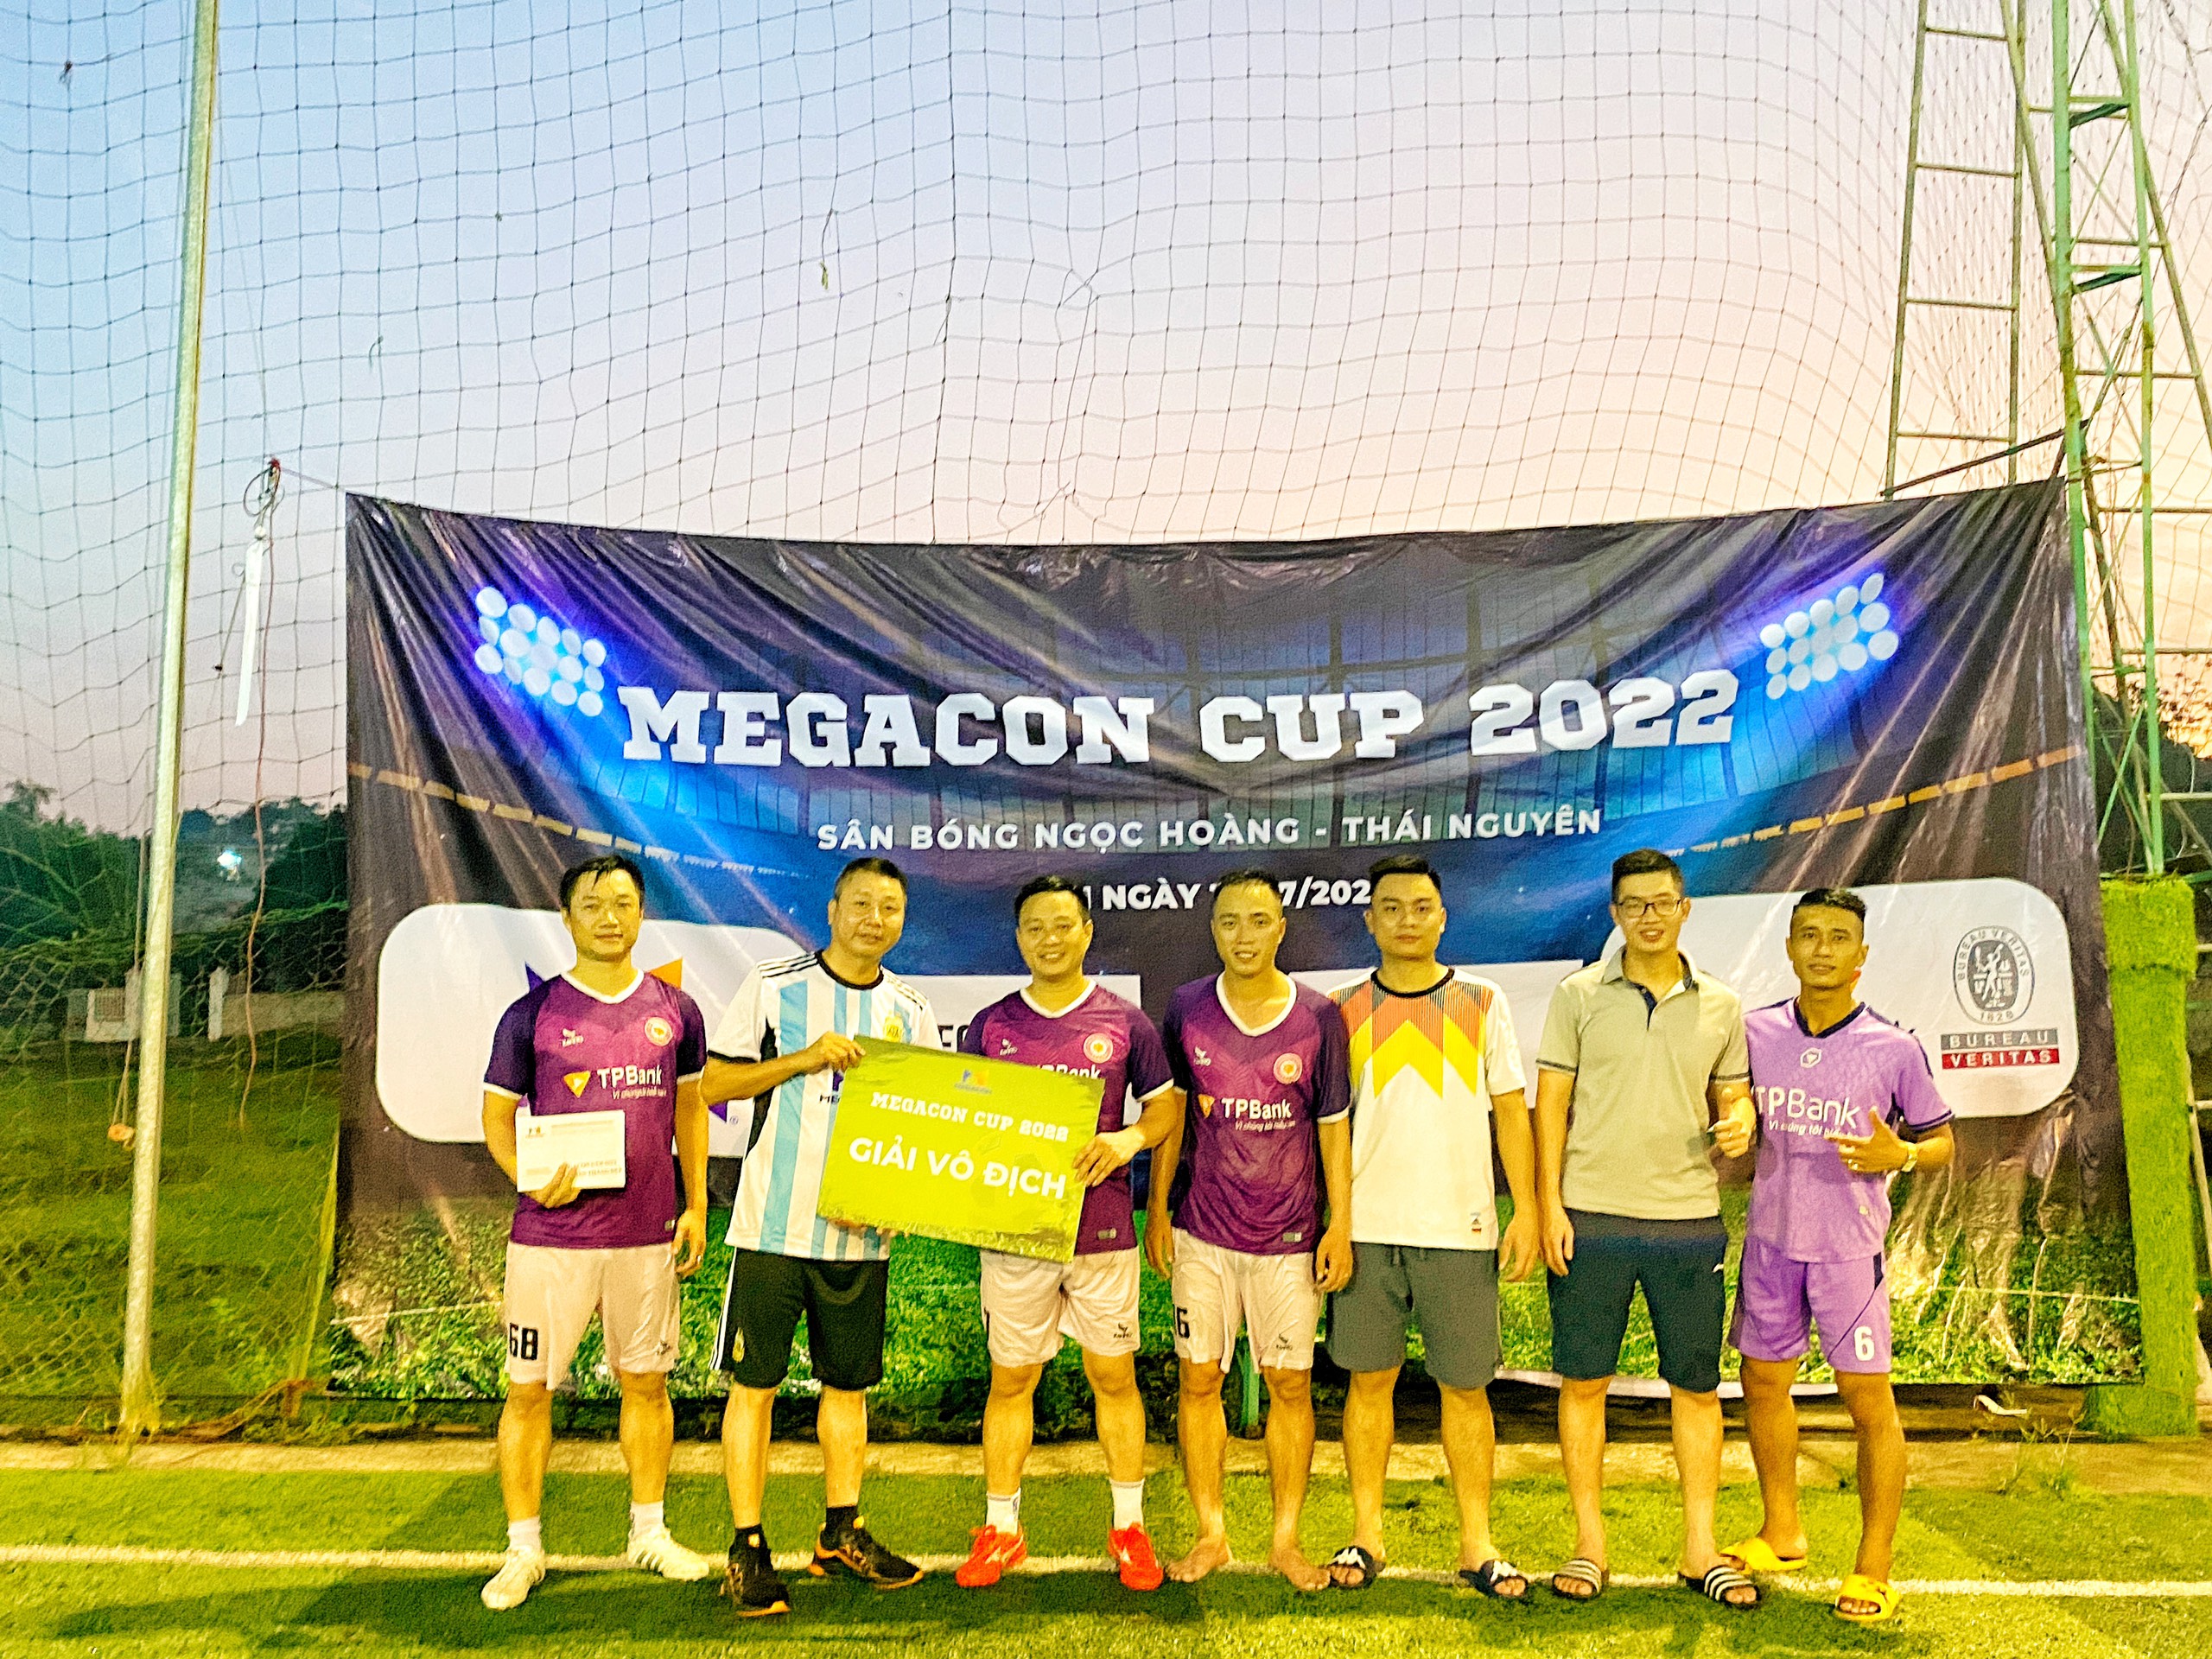 MEGACON CUP 2022 - NHỮNG KỶ NIỆM KHÓ QUÊN